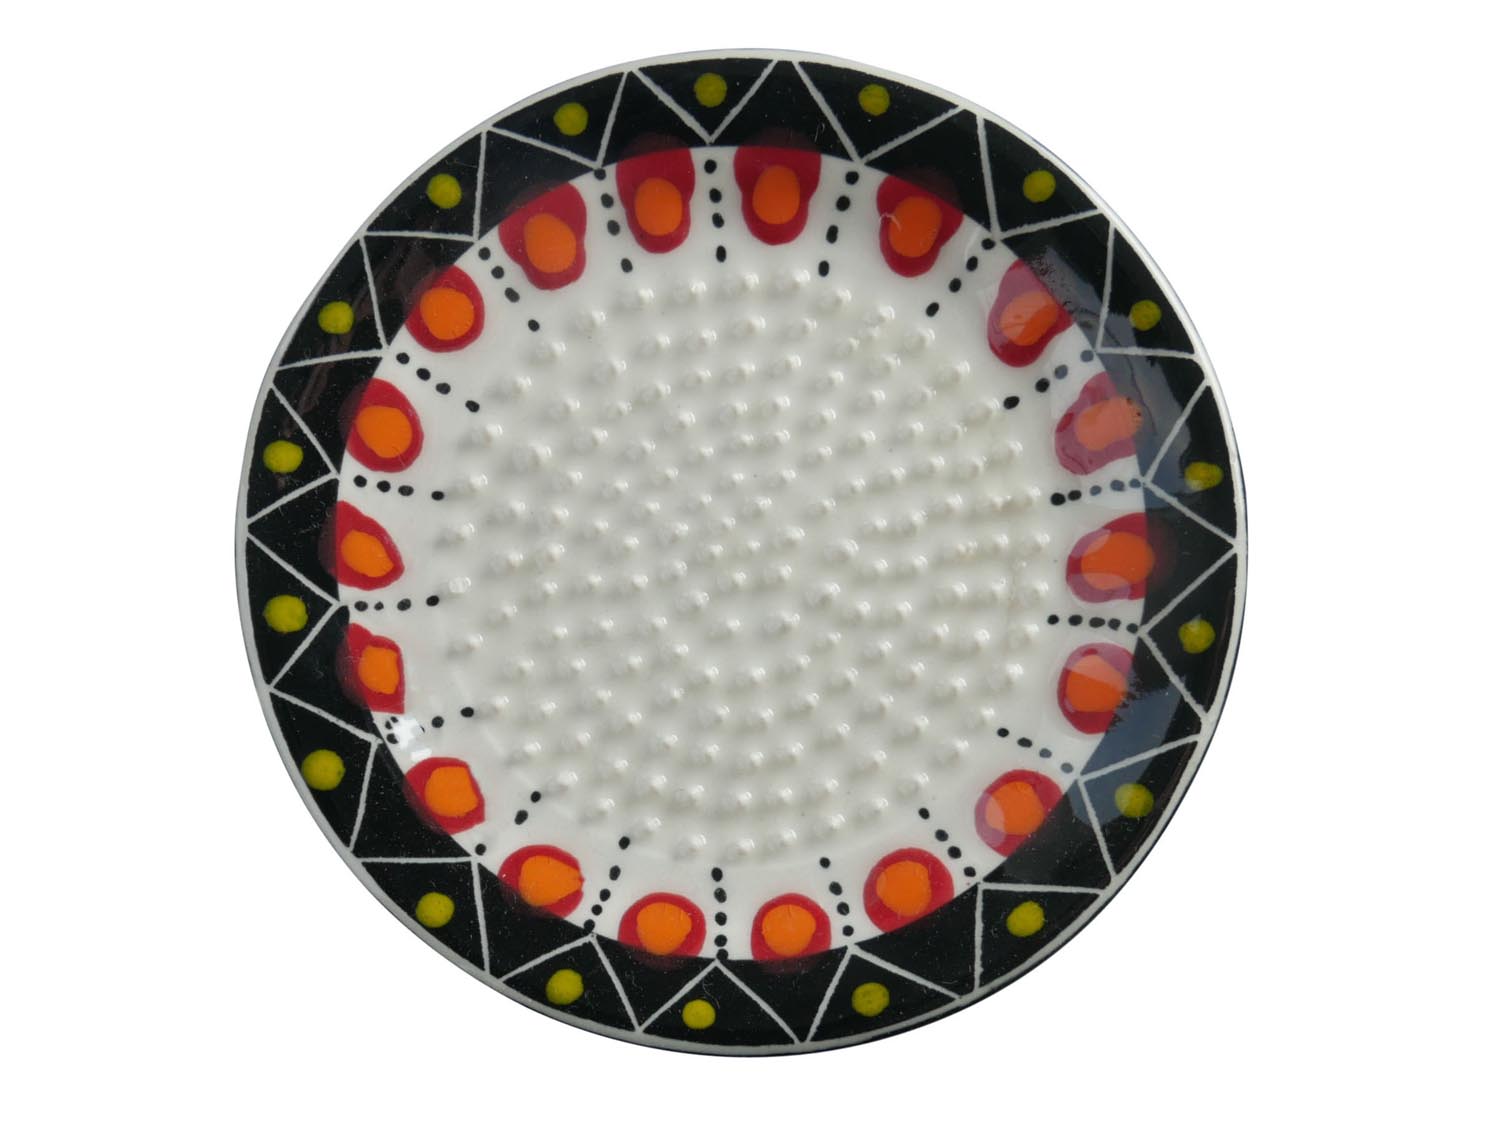 Keramikreibe - bemalte Reibe für Ingwer und Knoblauch - weiß, schwarz